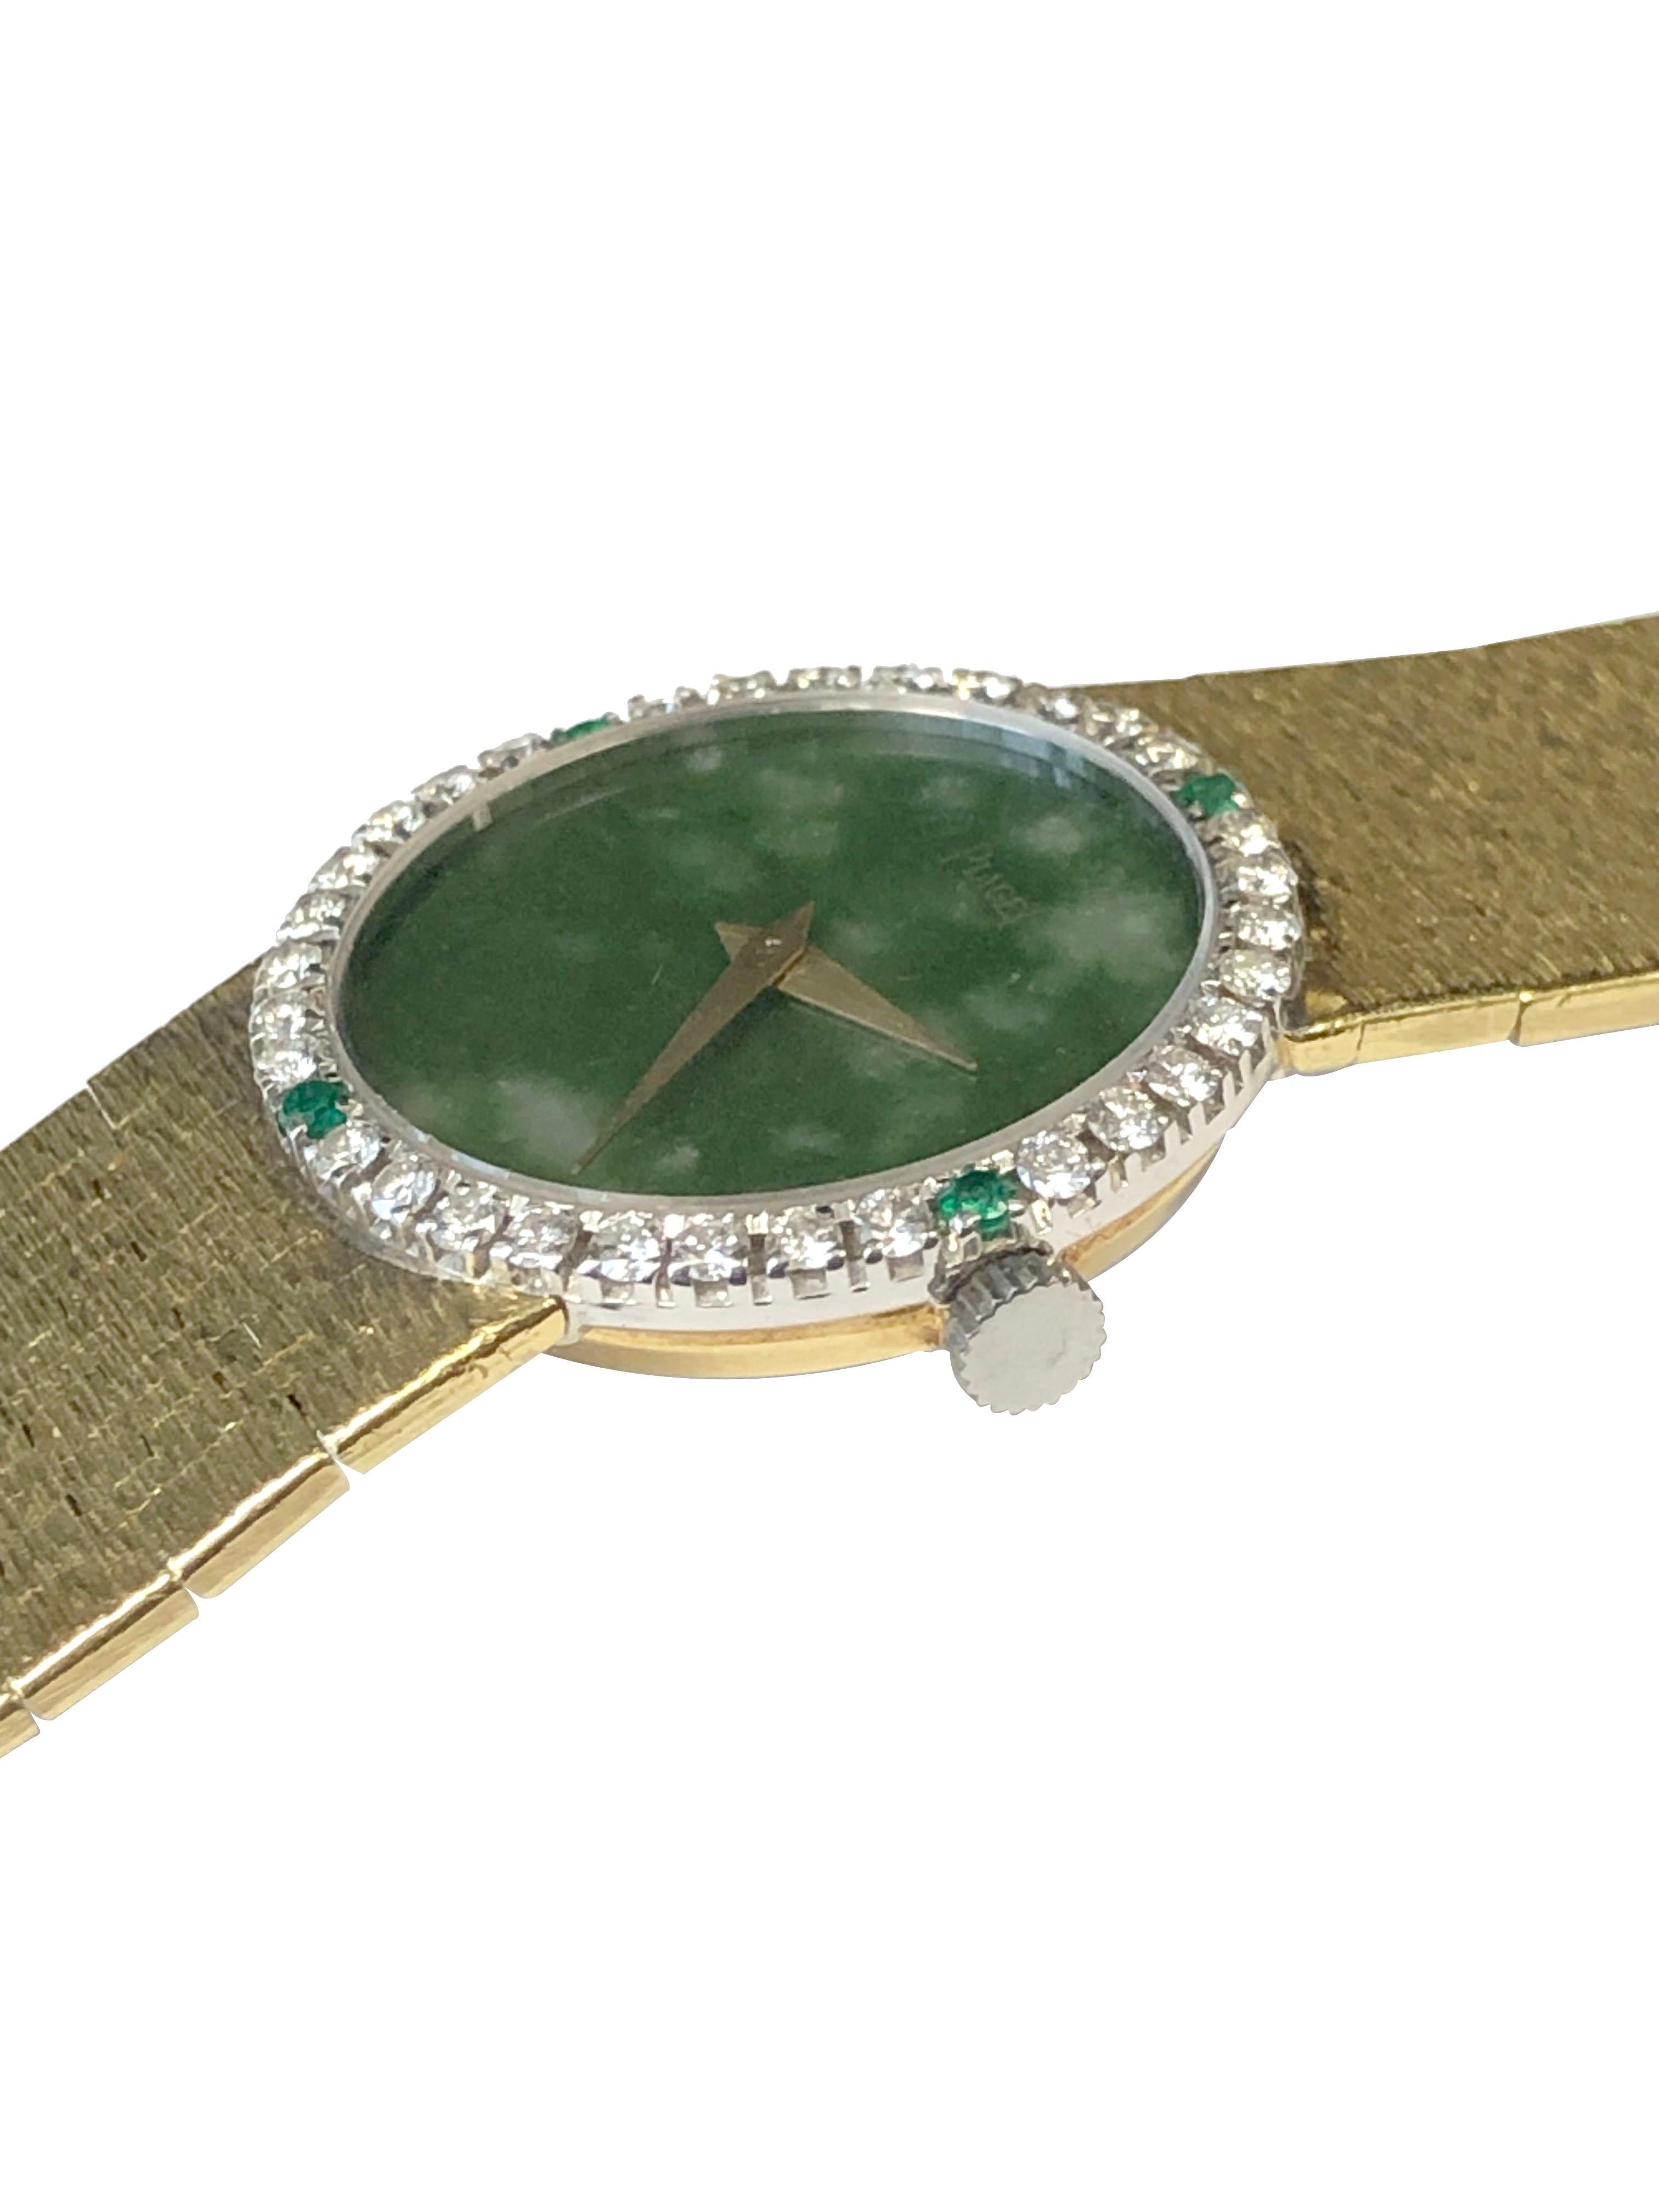 gold watch emerald face